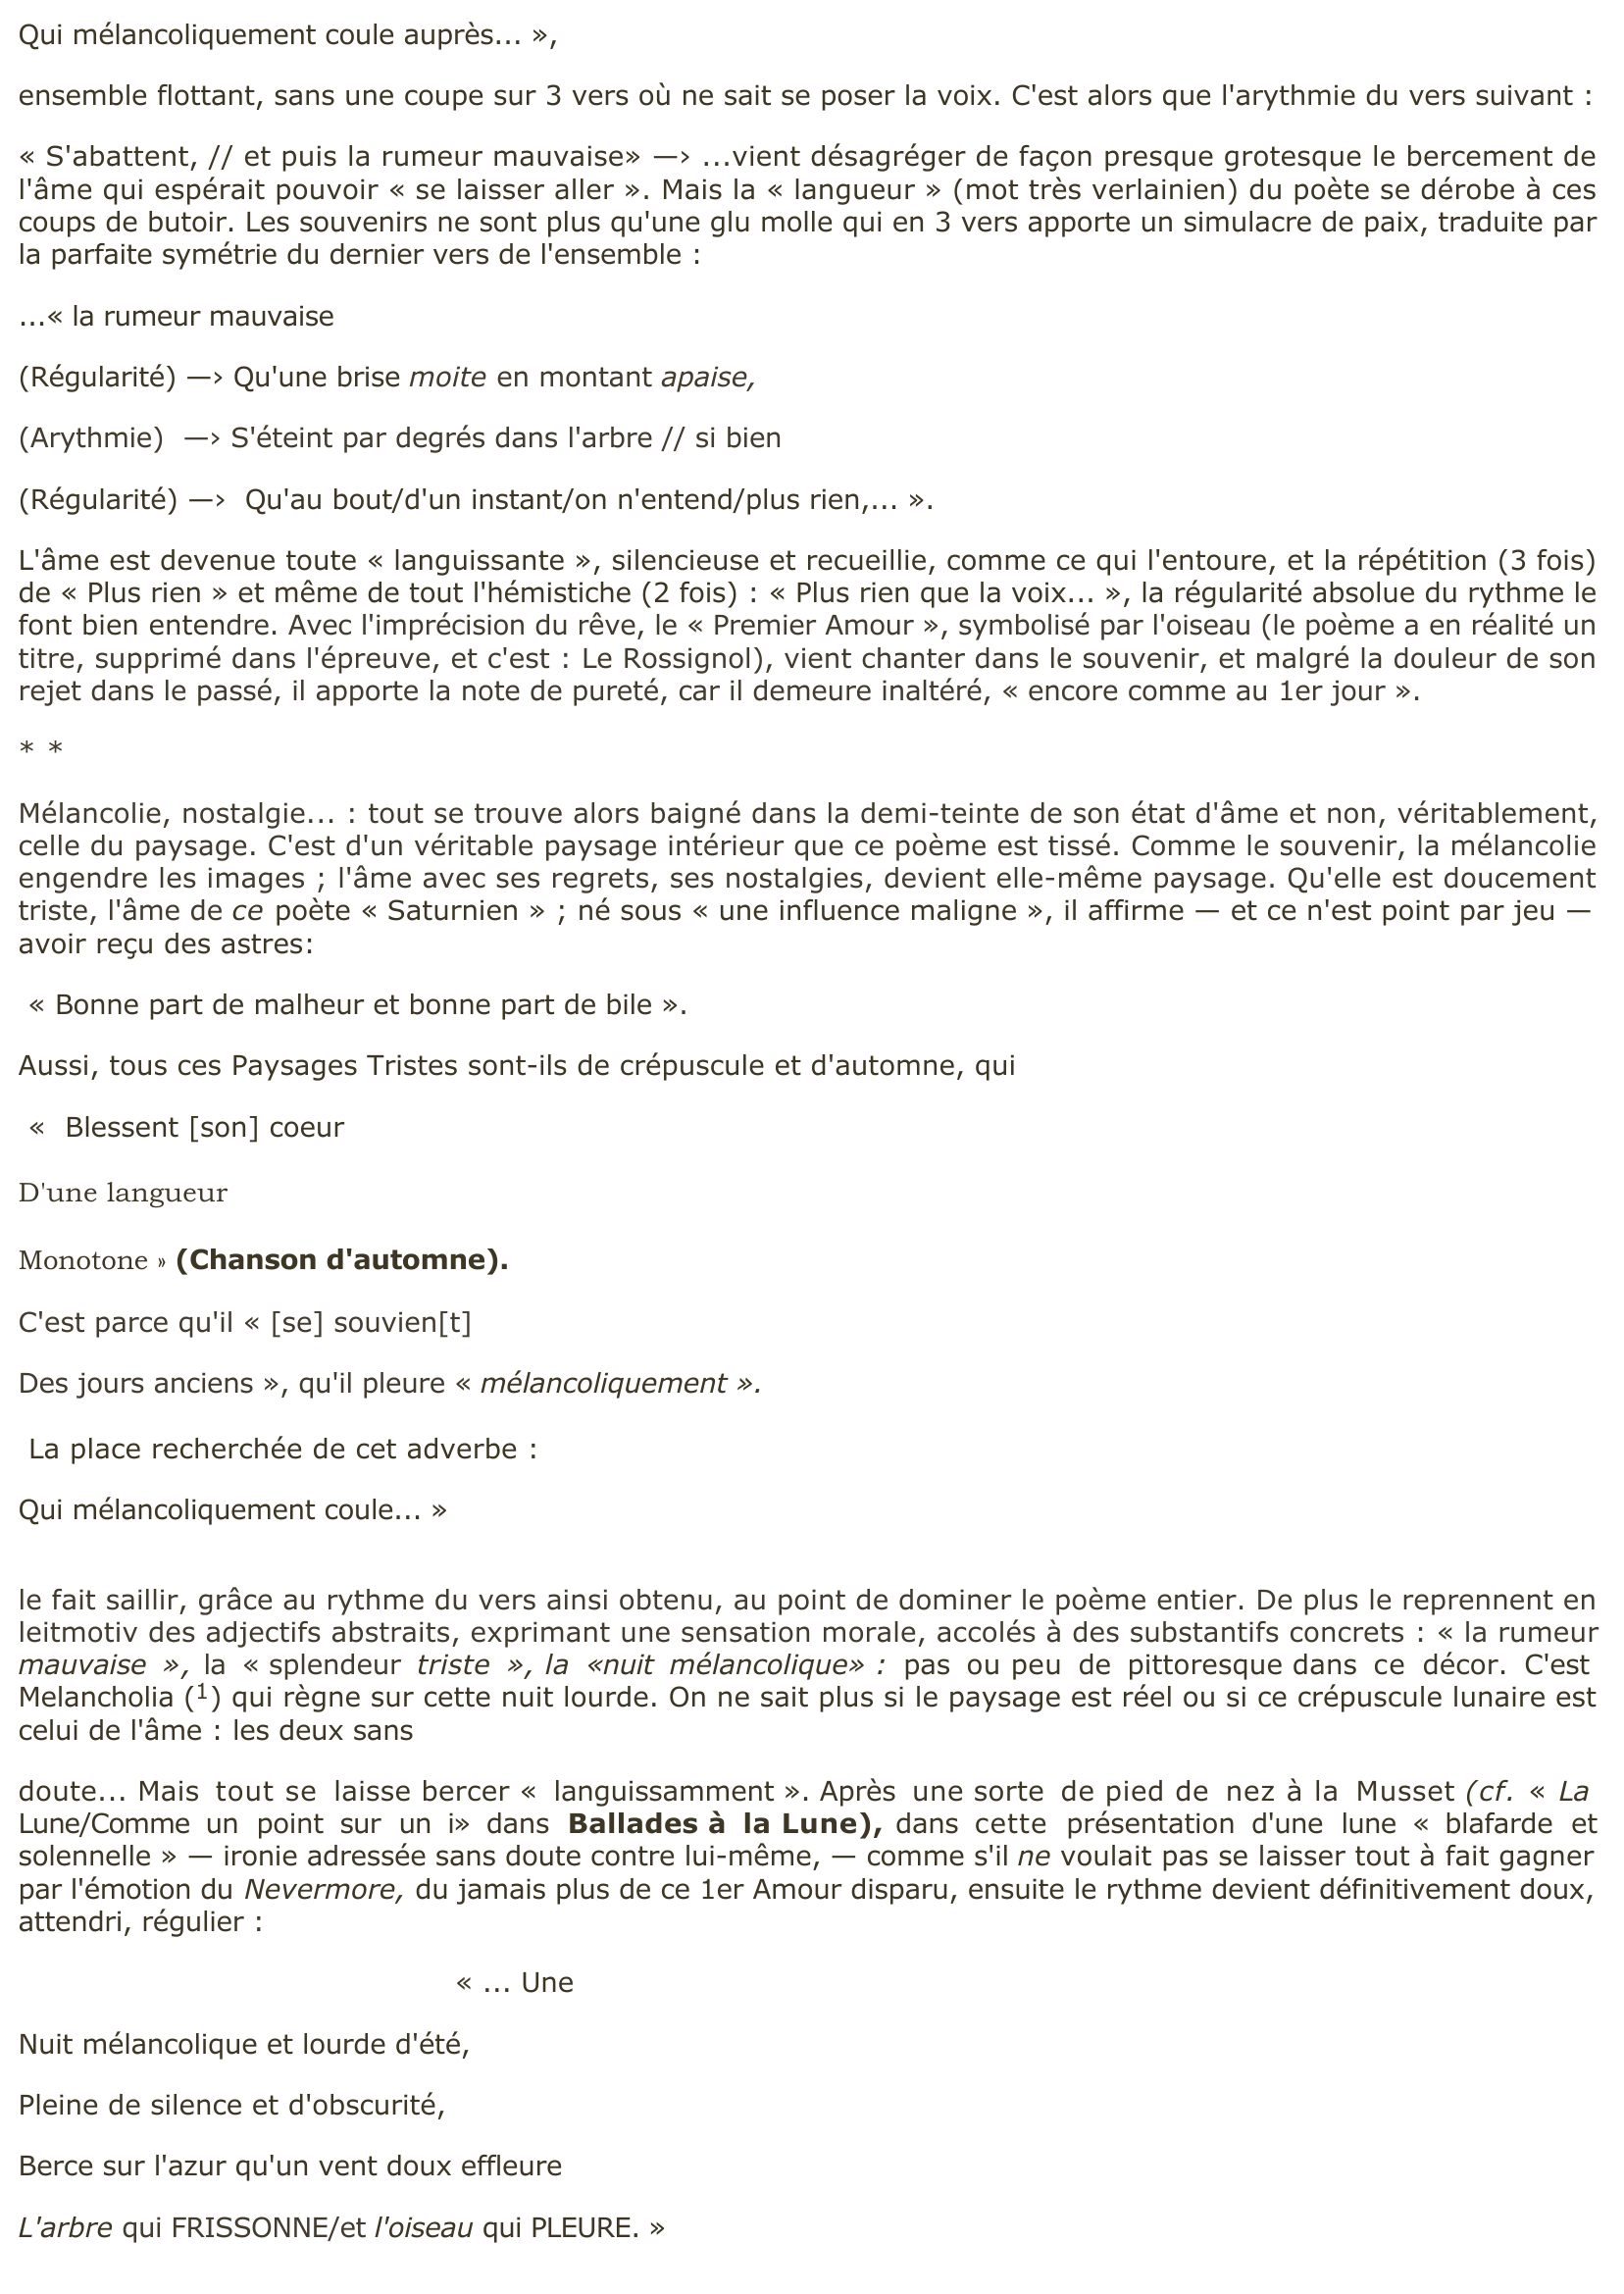 Prévisualisation du document " Rossignol" de Verlaine, Poèmes Saturniens